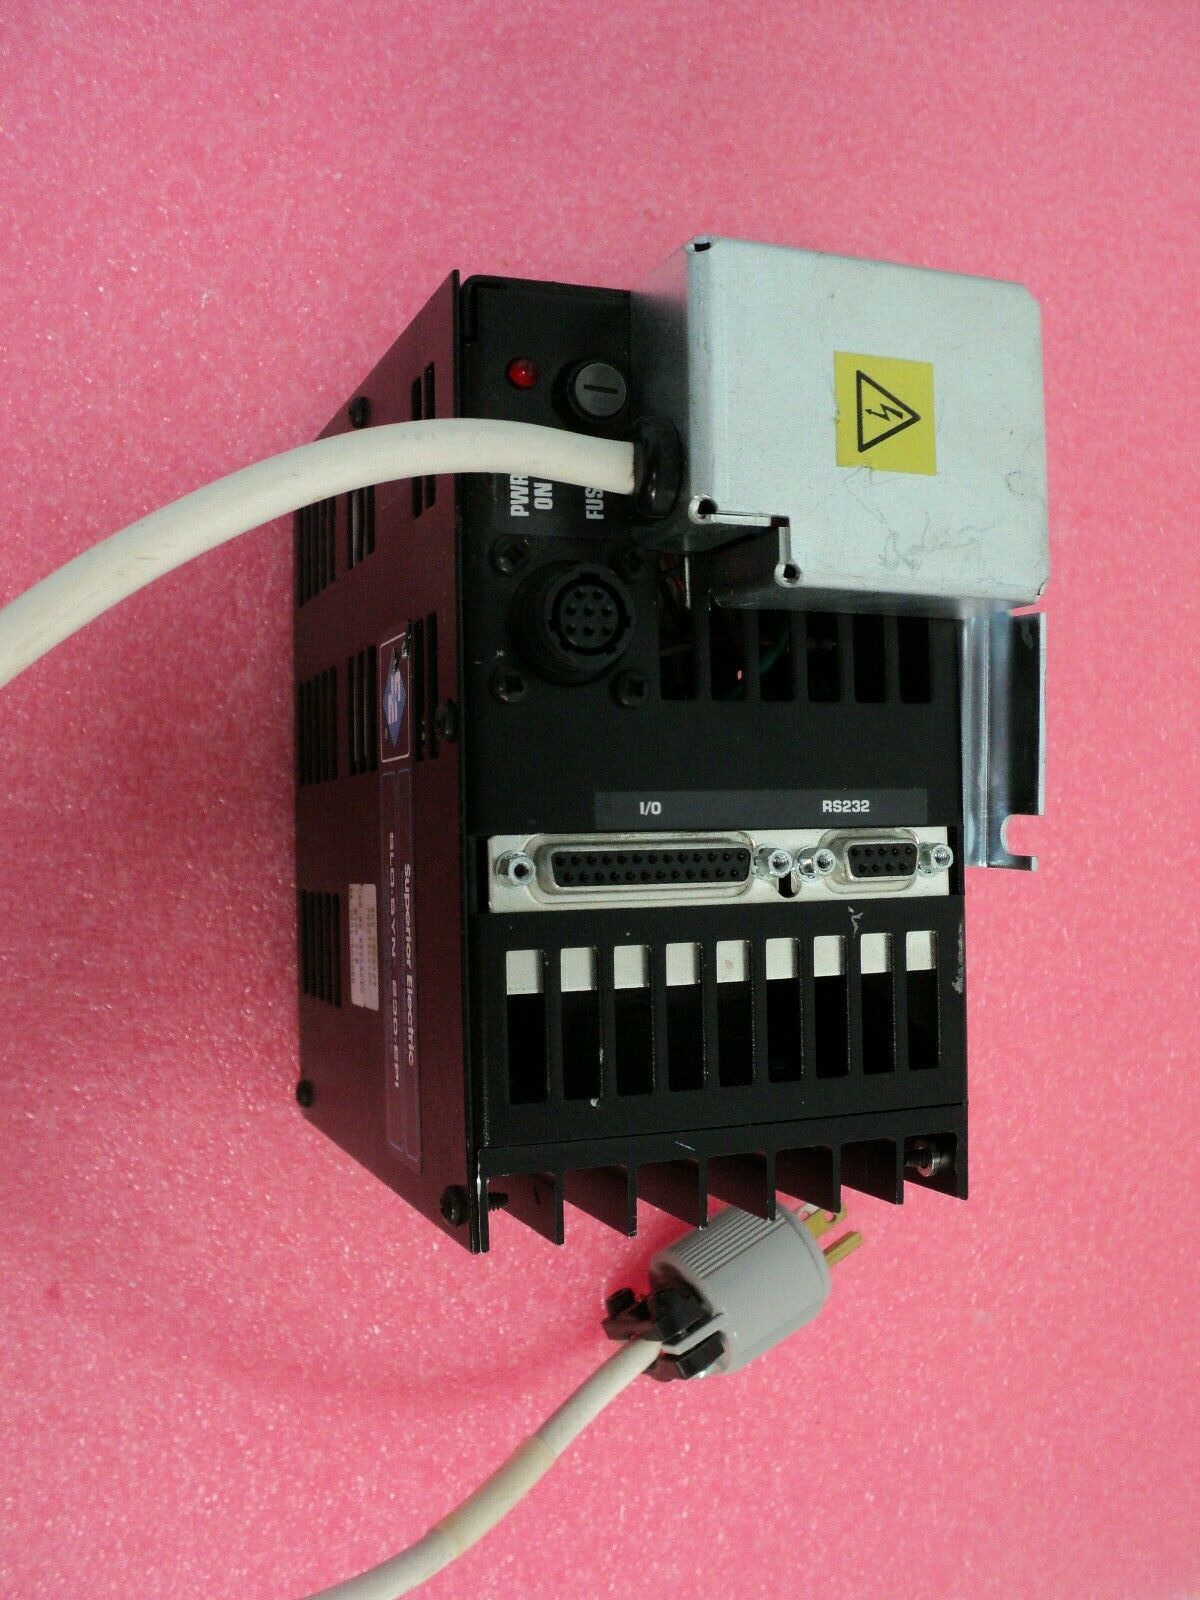 フォト（写真） 使用される SUPERIOR ELECTRIC SLO-SYN 230-EPI 販売のために